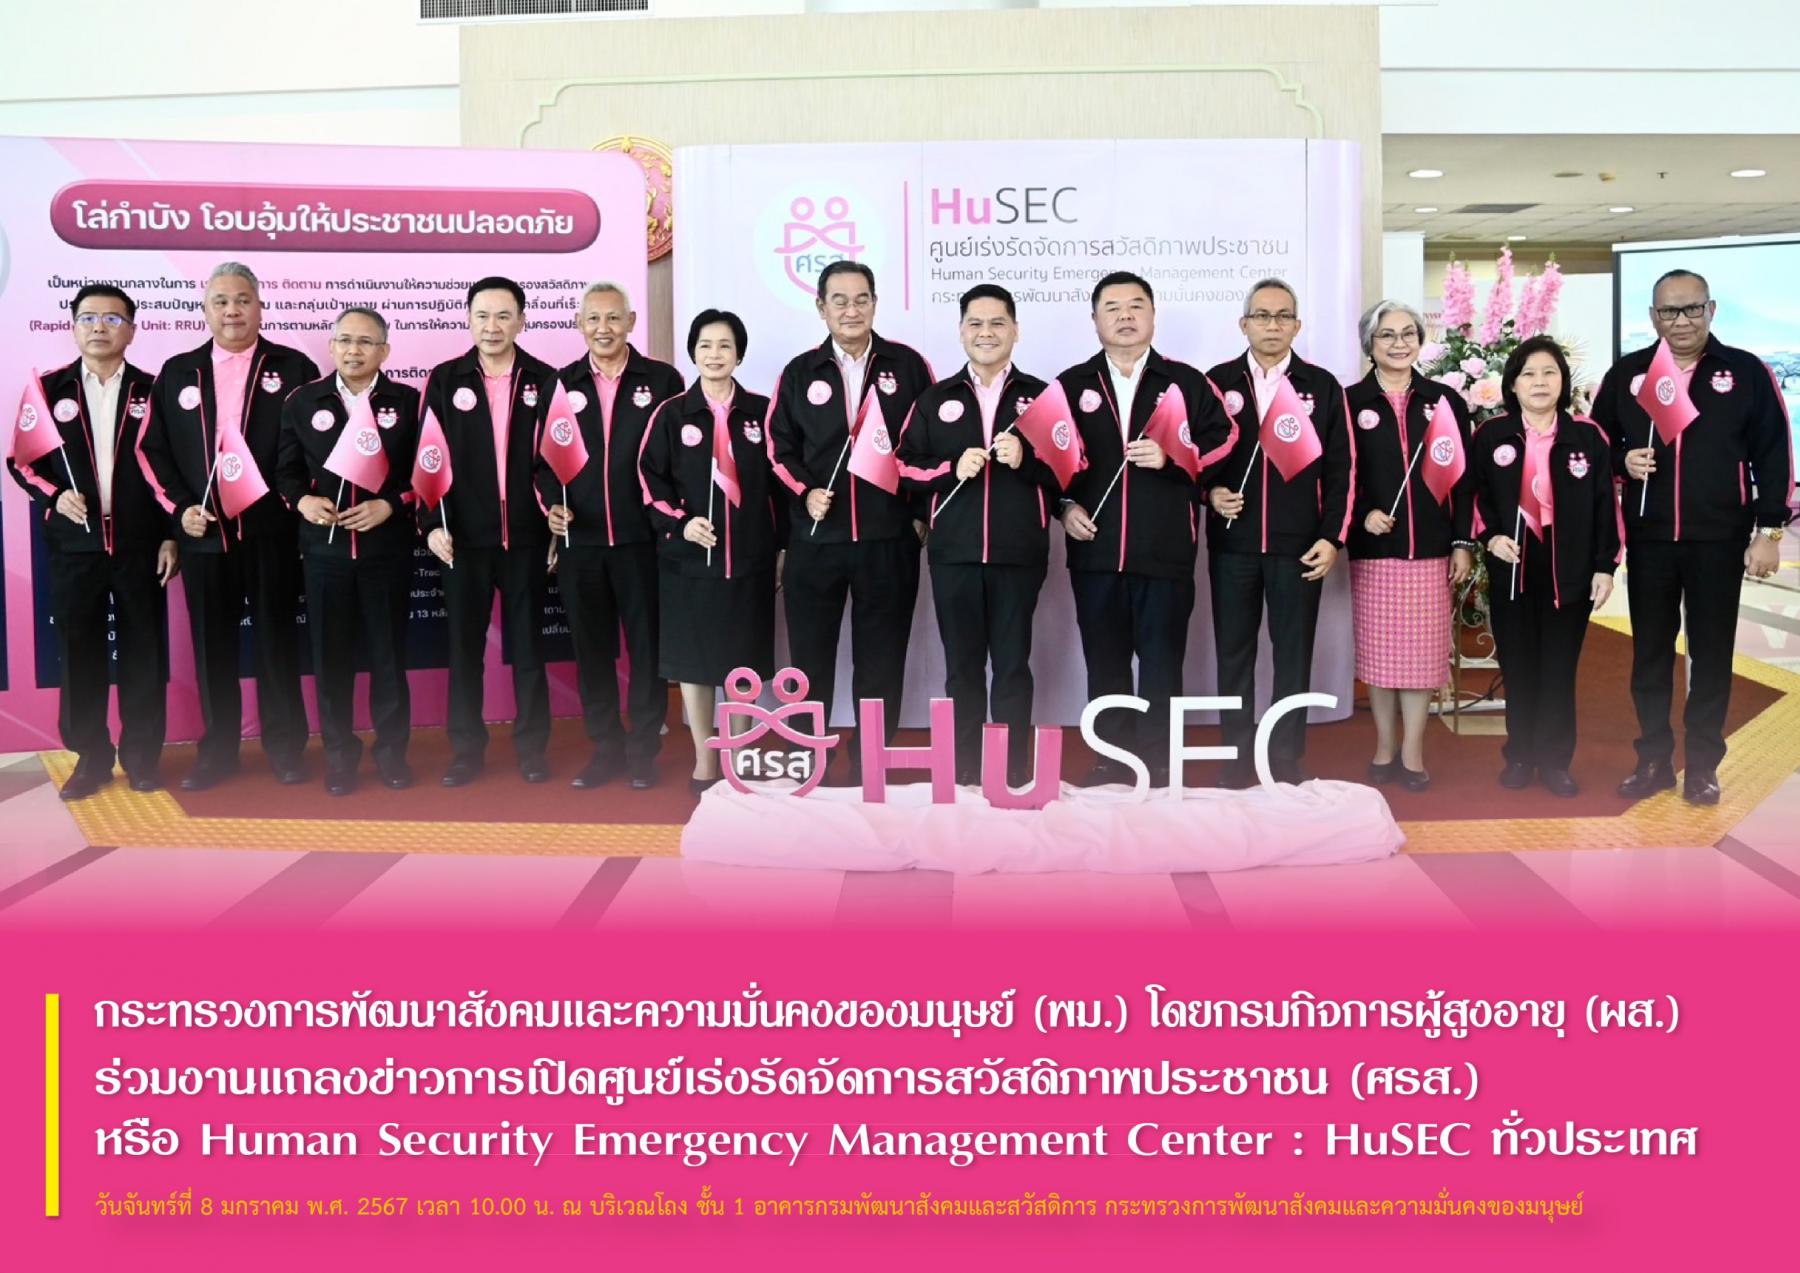 พม. โดยกรมกิจการผู้สูงอายุ (ผส.) ร่วมงานแถลงข่าวการเปิดศูนย์เร่งรัดจัดการสวัสดิภาพประชาชน (ศรส.) หรือ Human Security Emergency Management Center : HuSEC ทั่วประเทศ